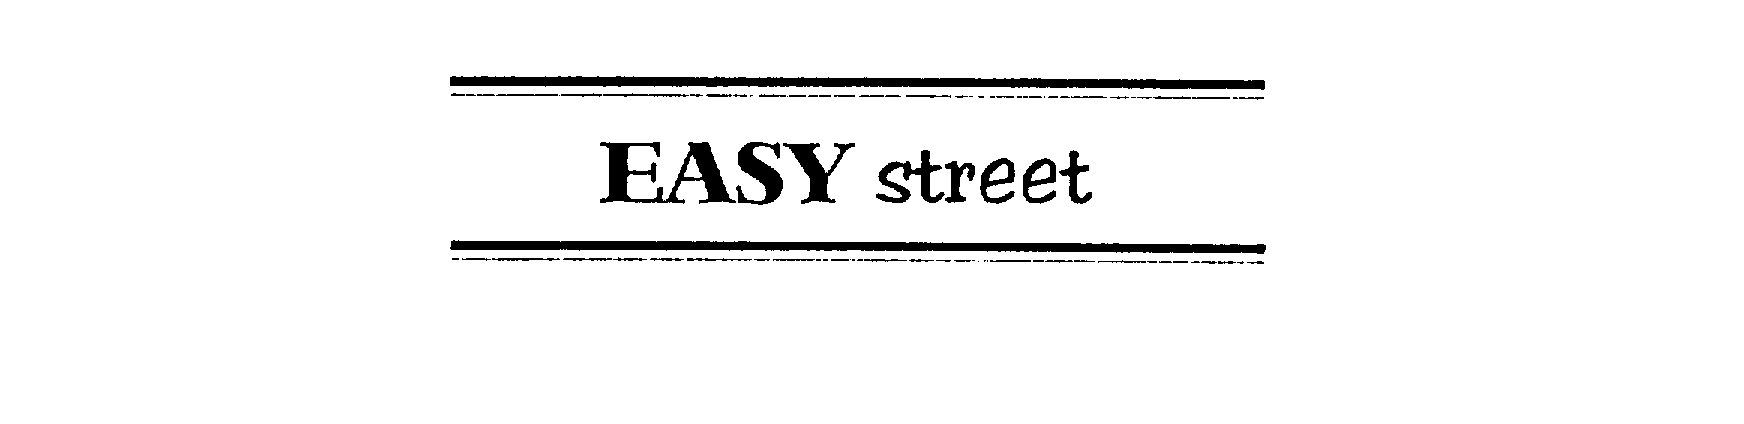  EASY STREET